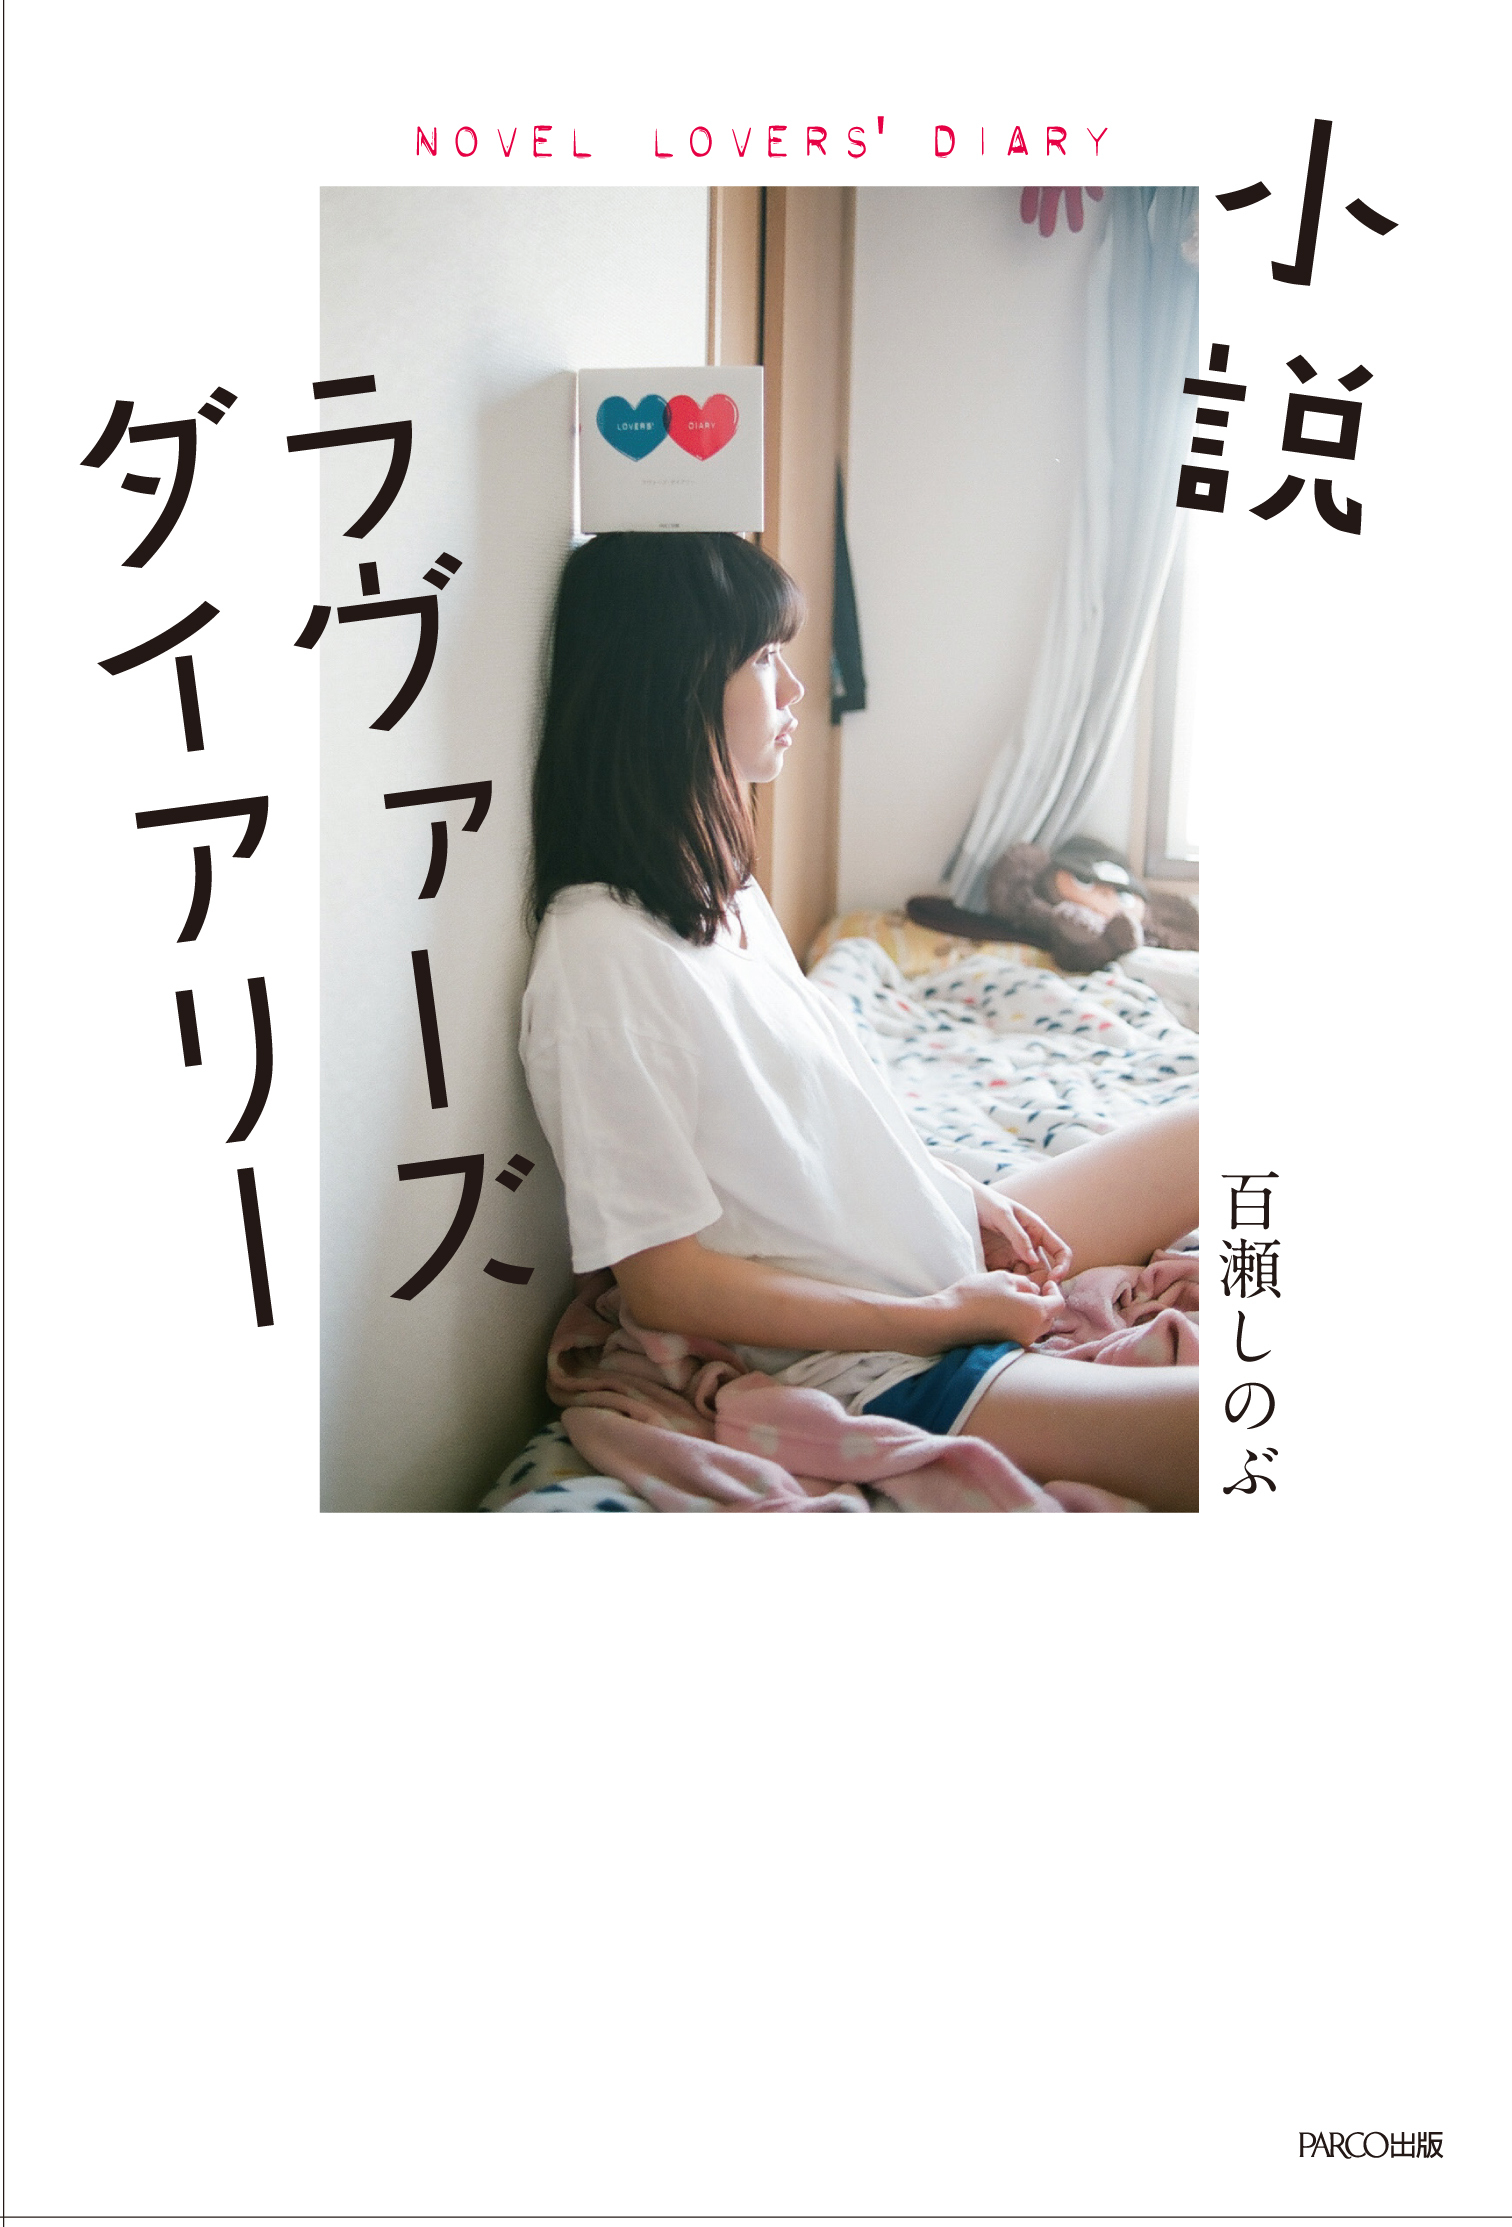 シリーズ累計80万部突破の恋愛交換日記が小説化 小説ラヴァーズダイアリー が3月1日に発売 Parco出版のプレスリリース